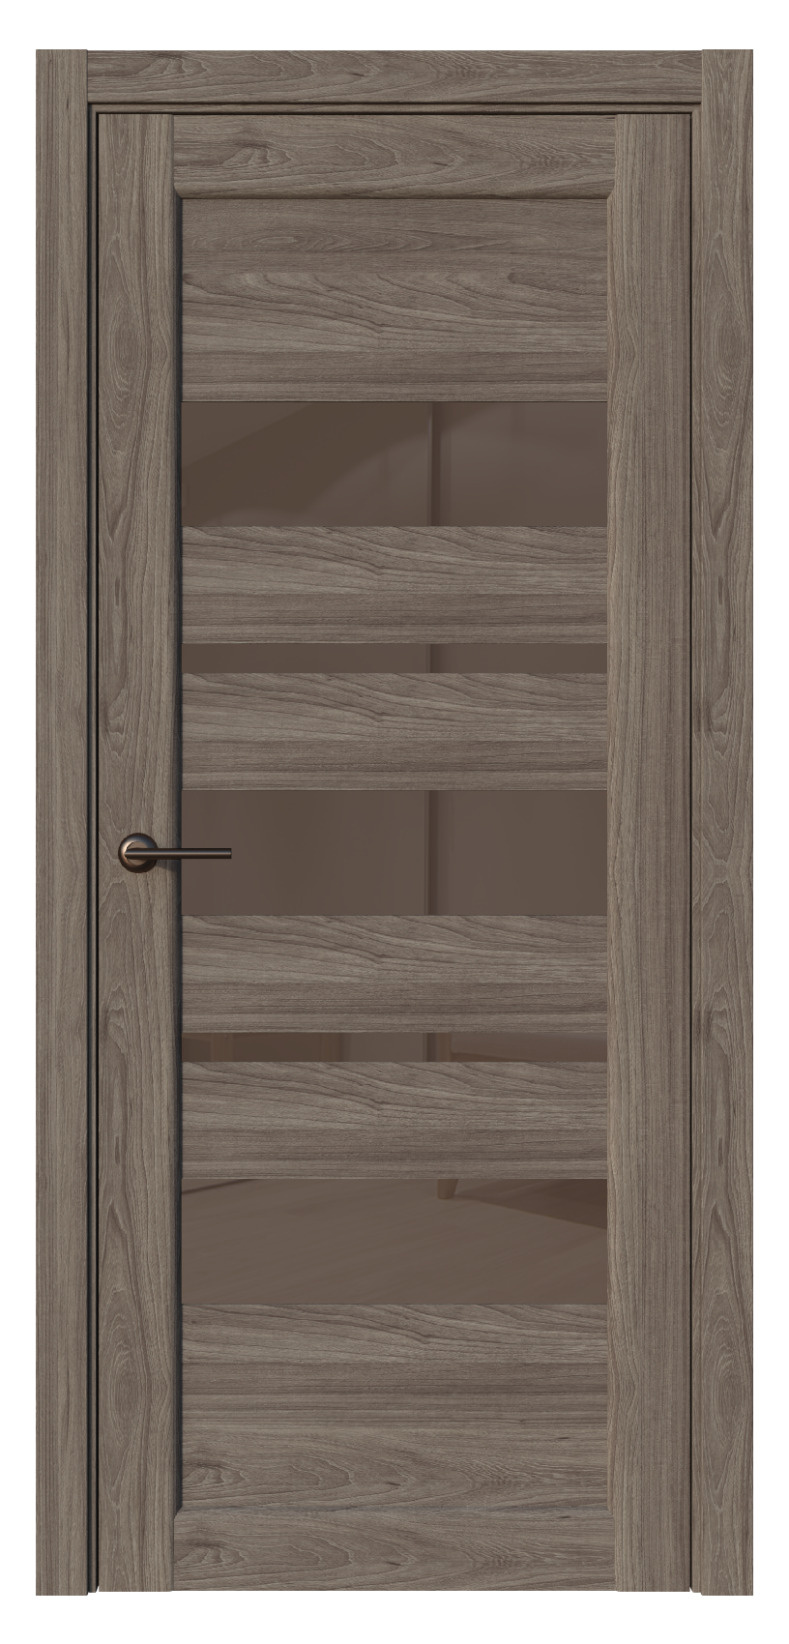 Questdoors Межкомнатная дверь QX15, арт. 17587 - фото №1